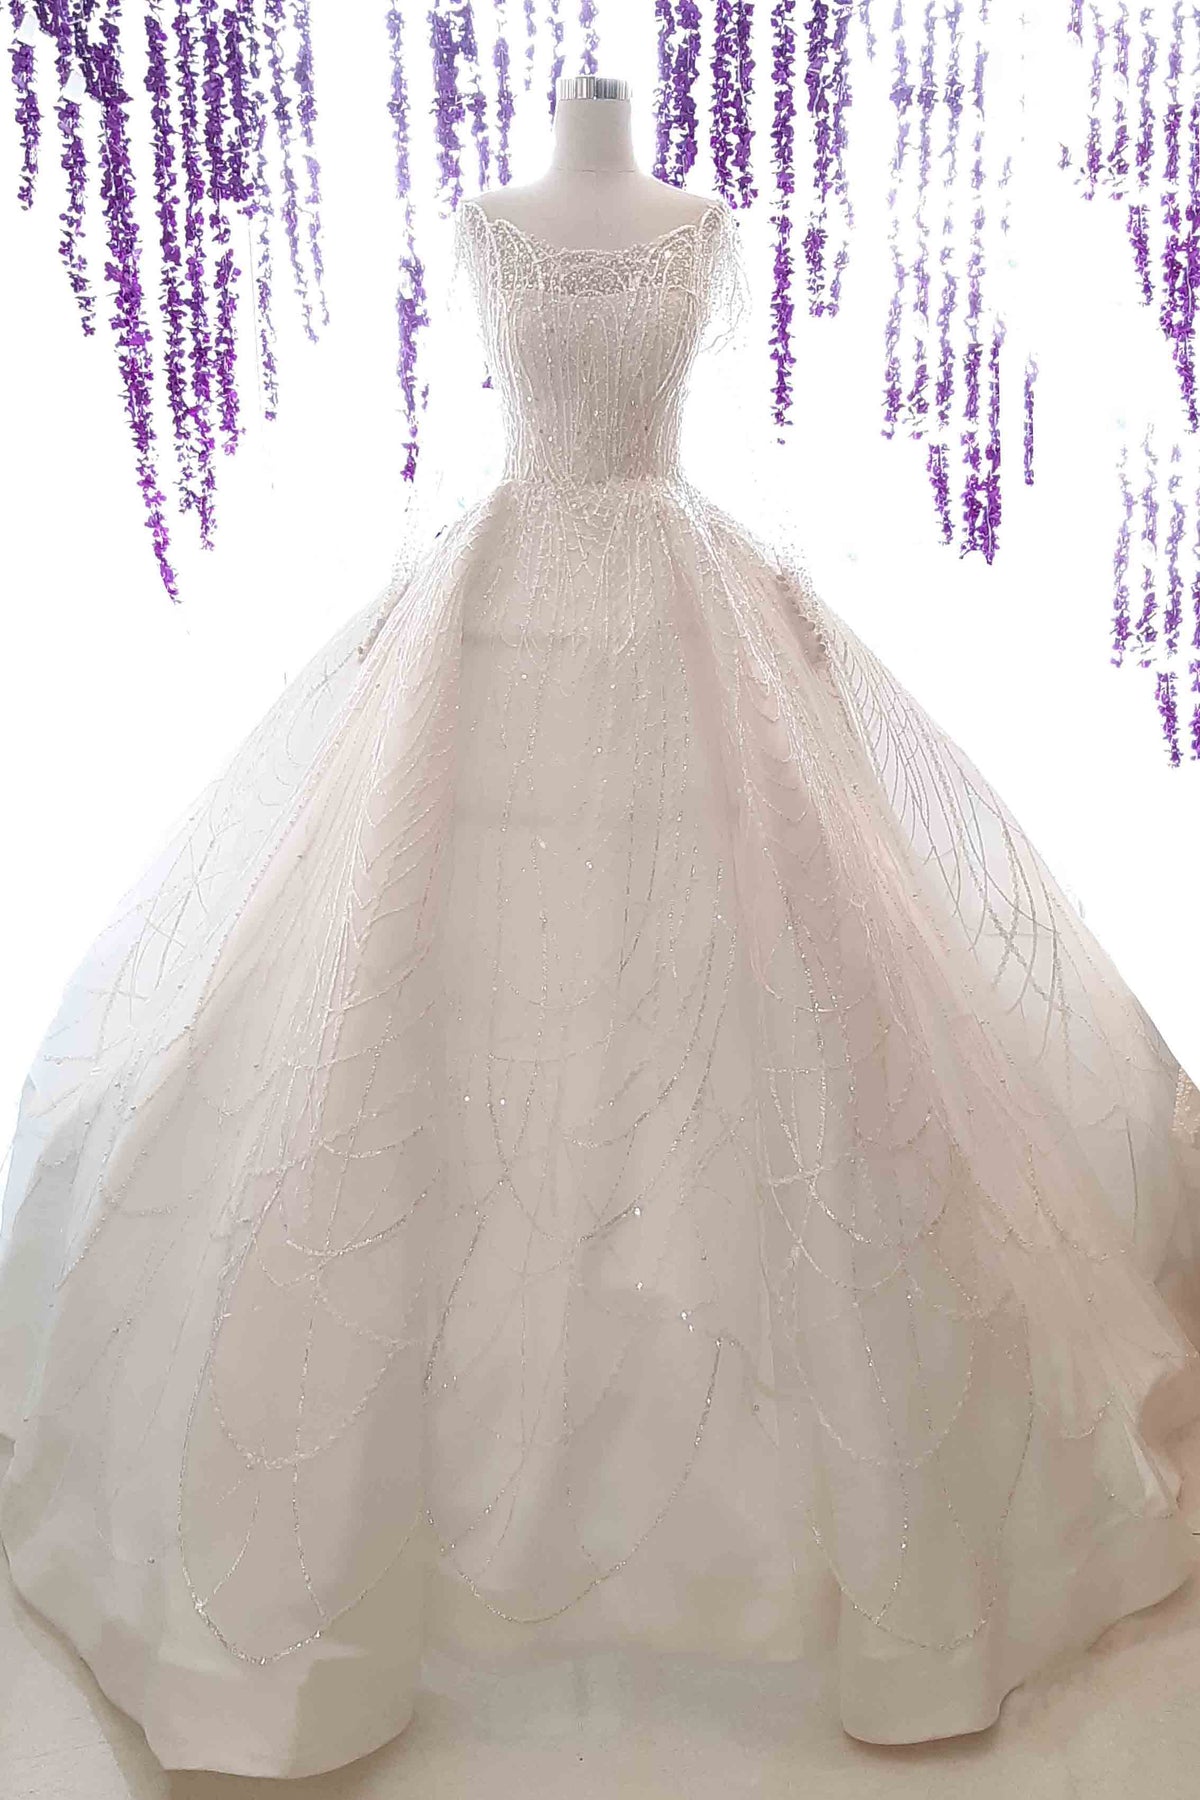 Veronika Vidyanita Wedding Gown – Dresscodes